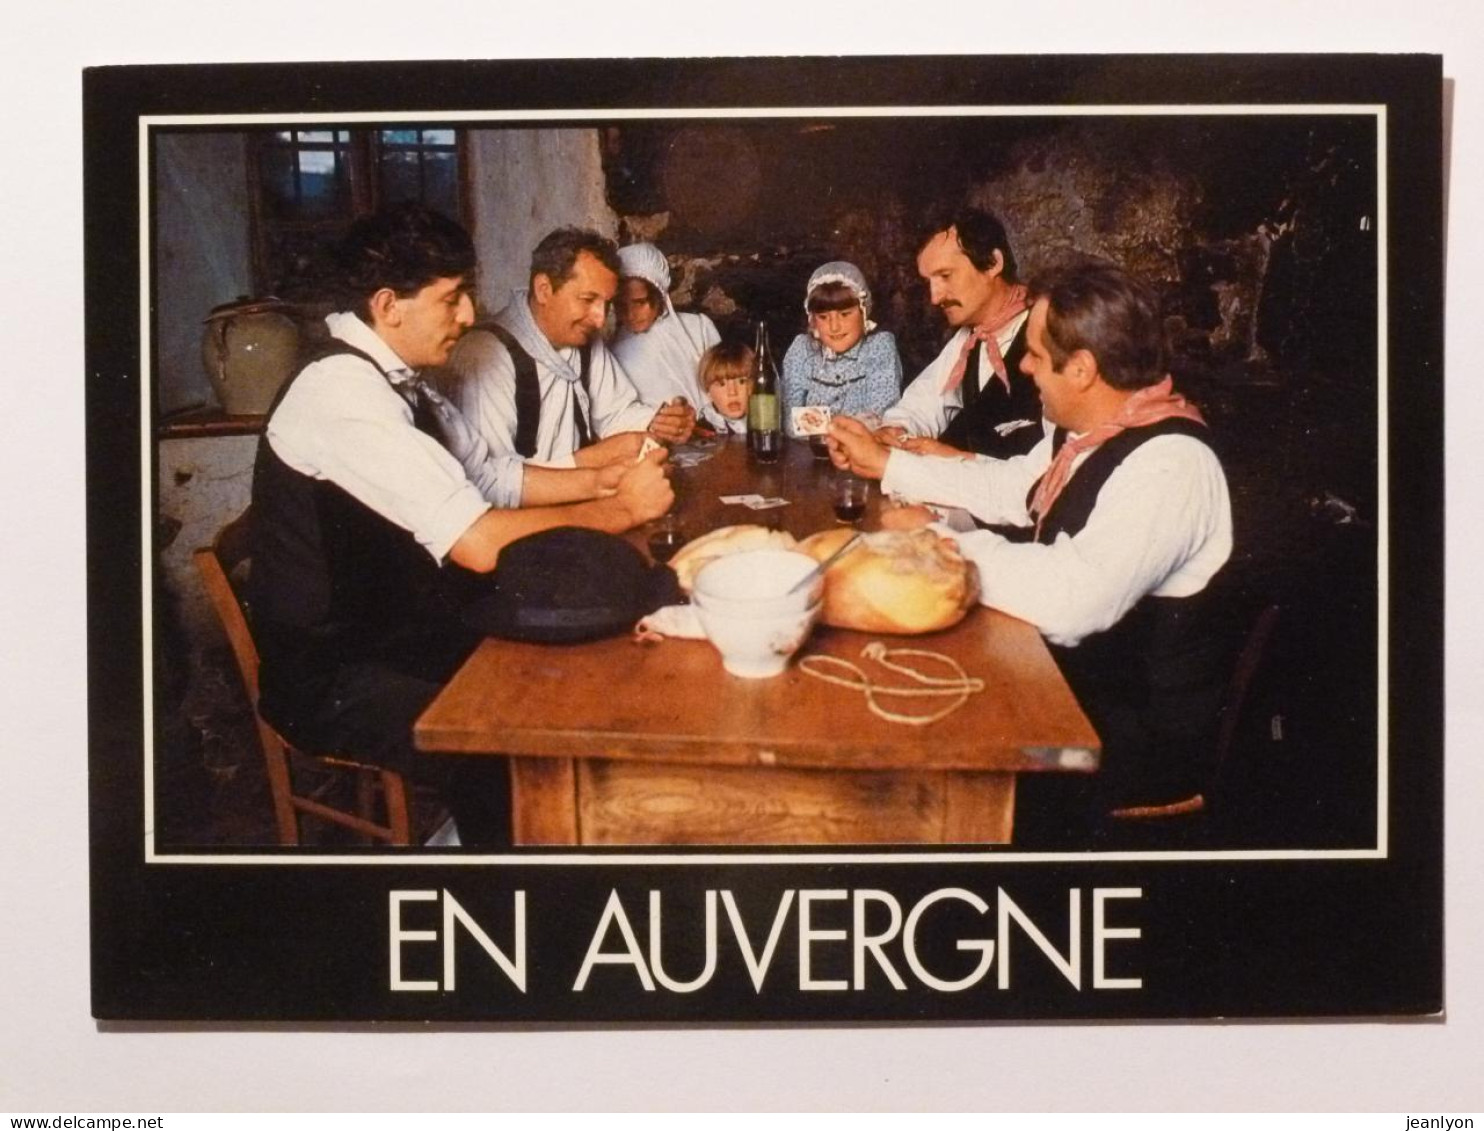 AUVERGNE - Partie De Cartes / Table Avec Bouteille De Vin - Playing Cards